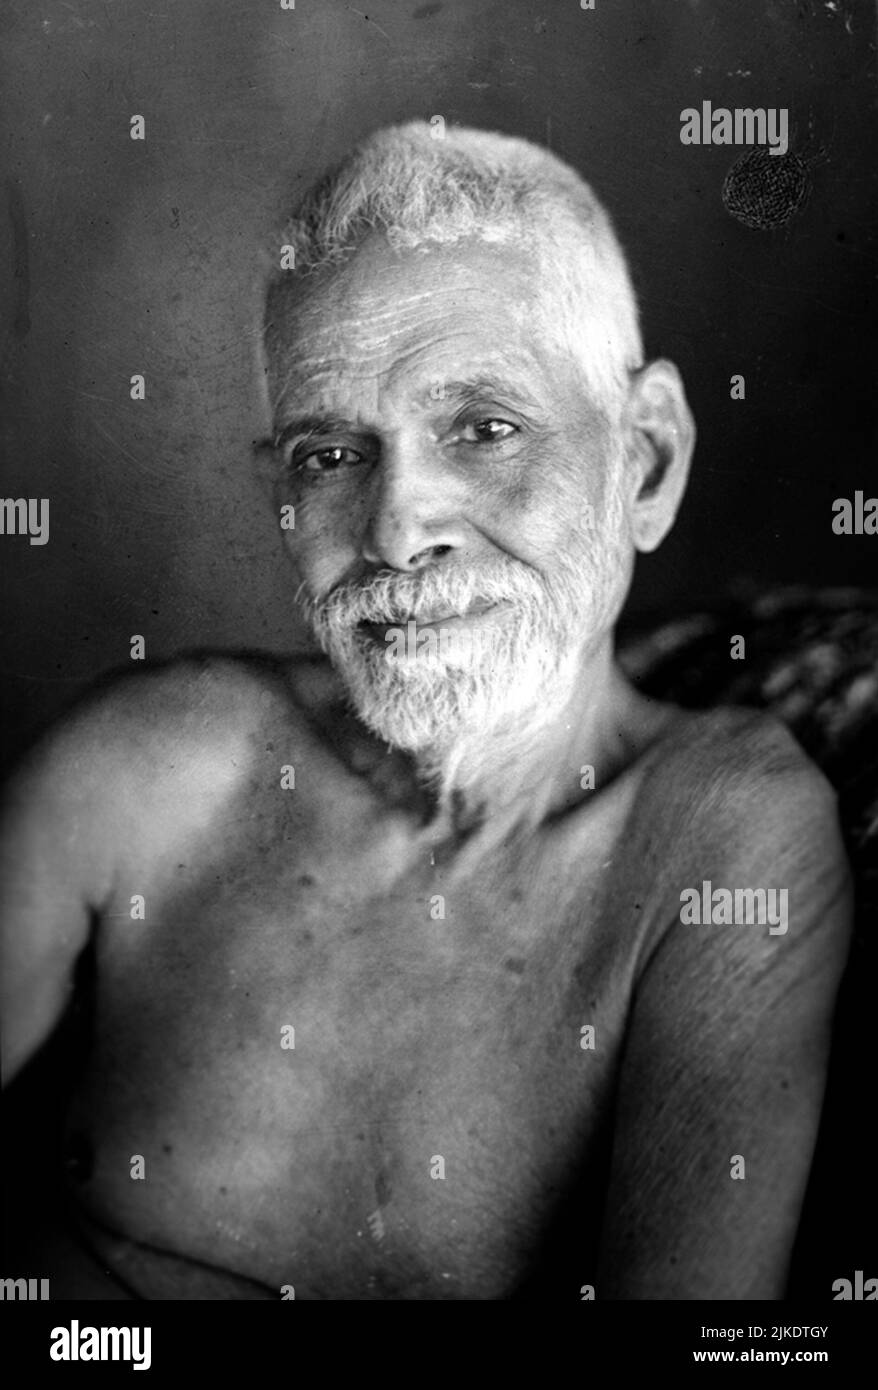 Ritratto fotografico in bianco e nero della salvia indiana Sri Ramana Maharshi realizzato da C.G Welling nel 1948, Tiruvannamalai, India Foto Stock